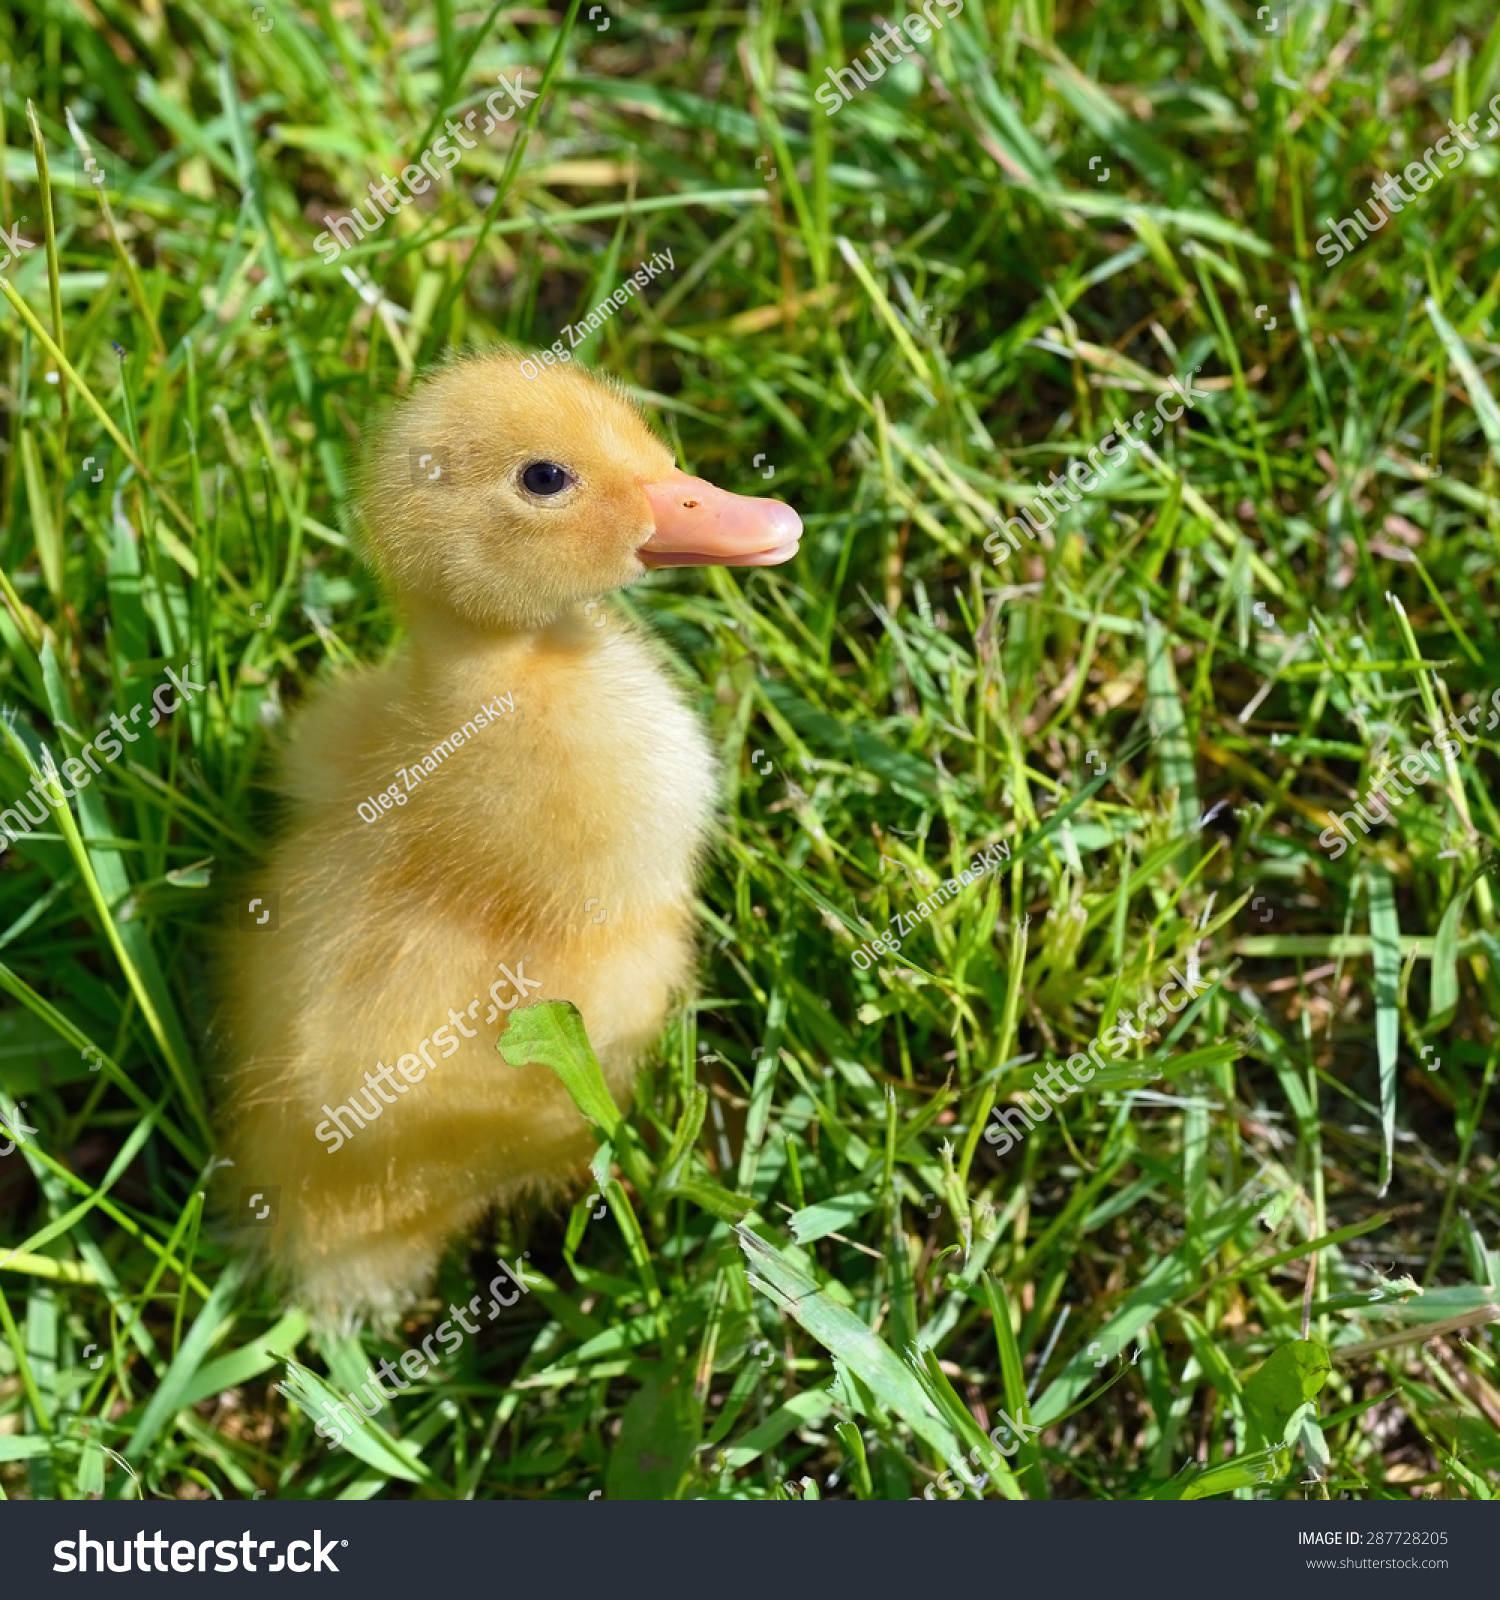 Little Cute Duckling Green Grass Farm Stock Photo 287728205 ...